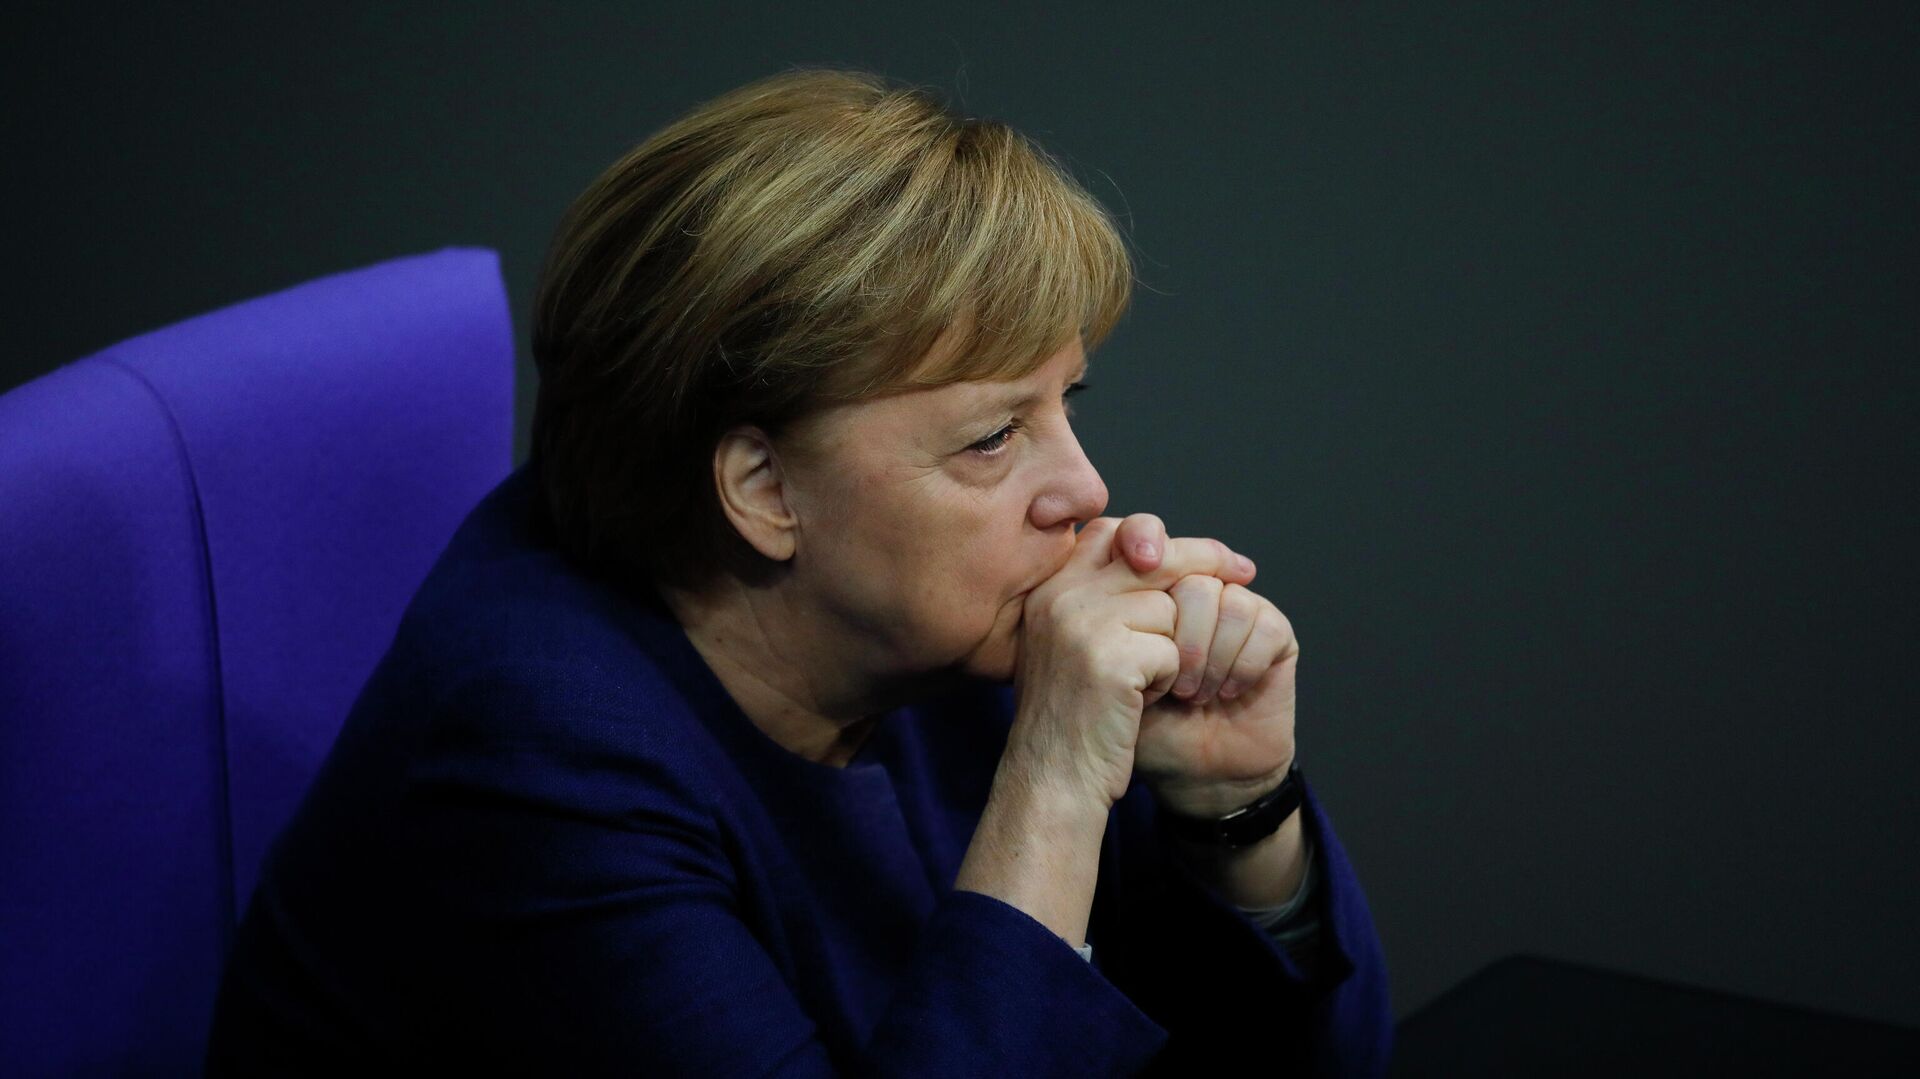 Канцлер Германи Ангела Меркель в Бундестаге, Берлин  - РИА Новости, 1920, 19.03.2021